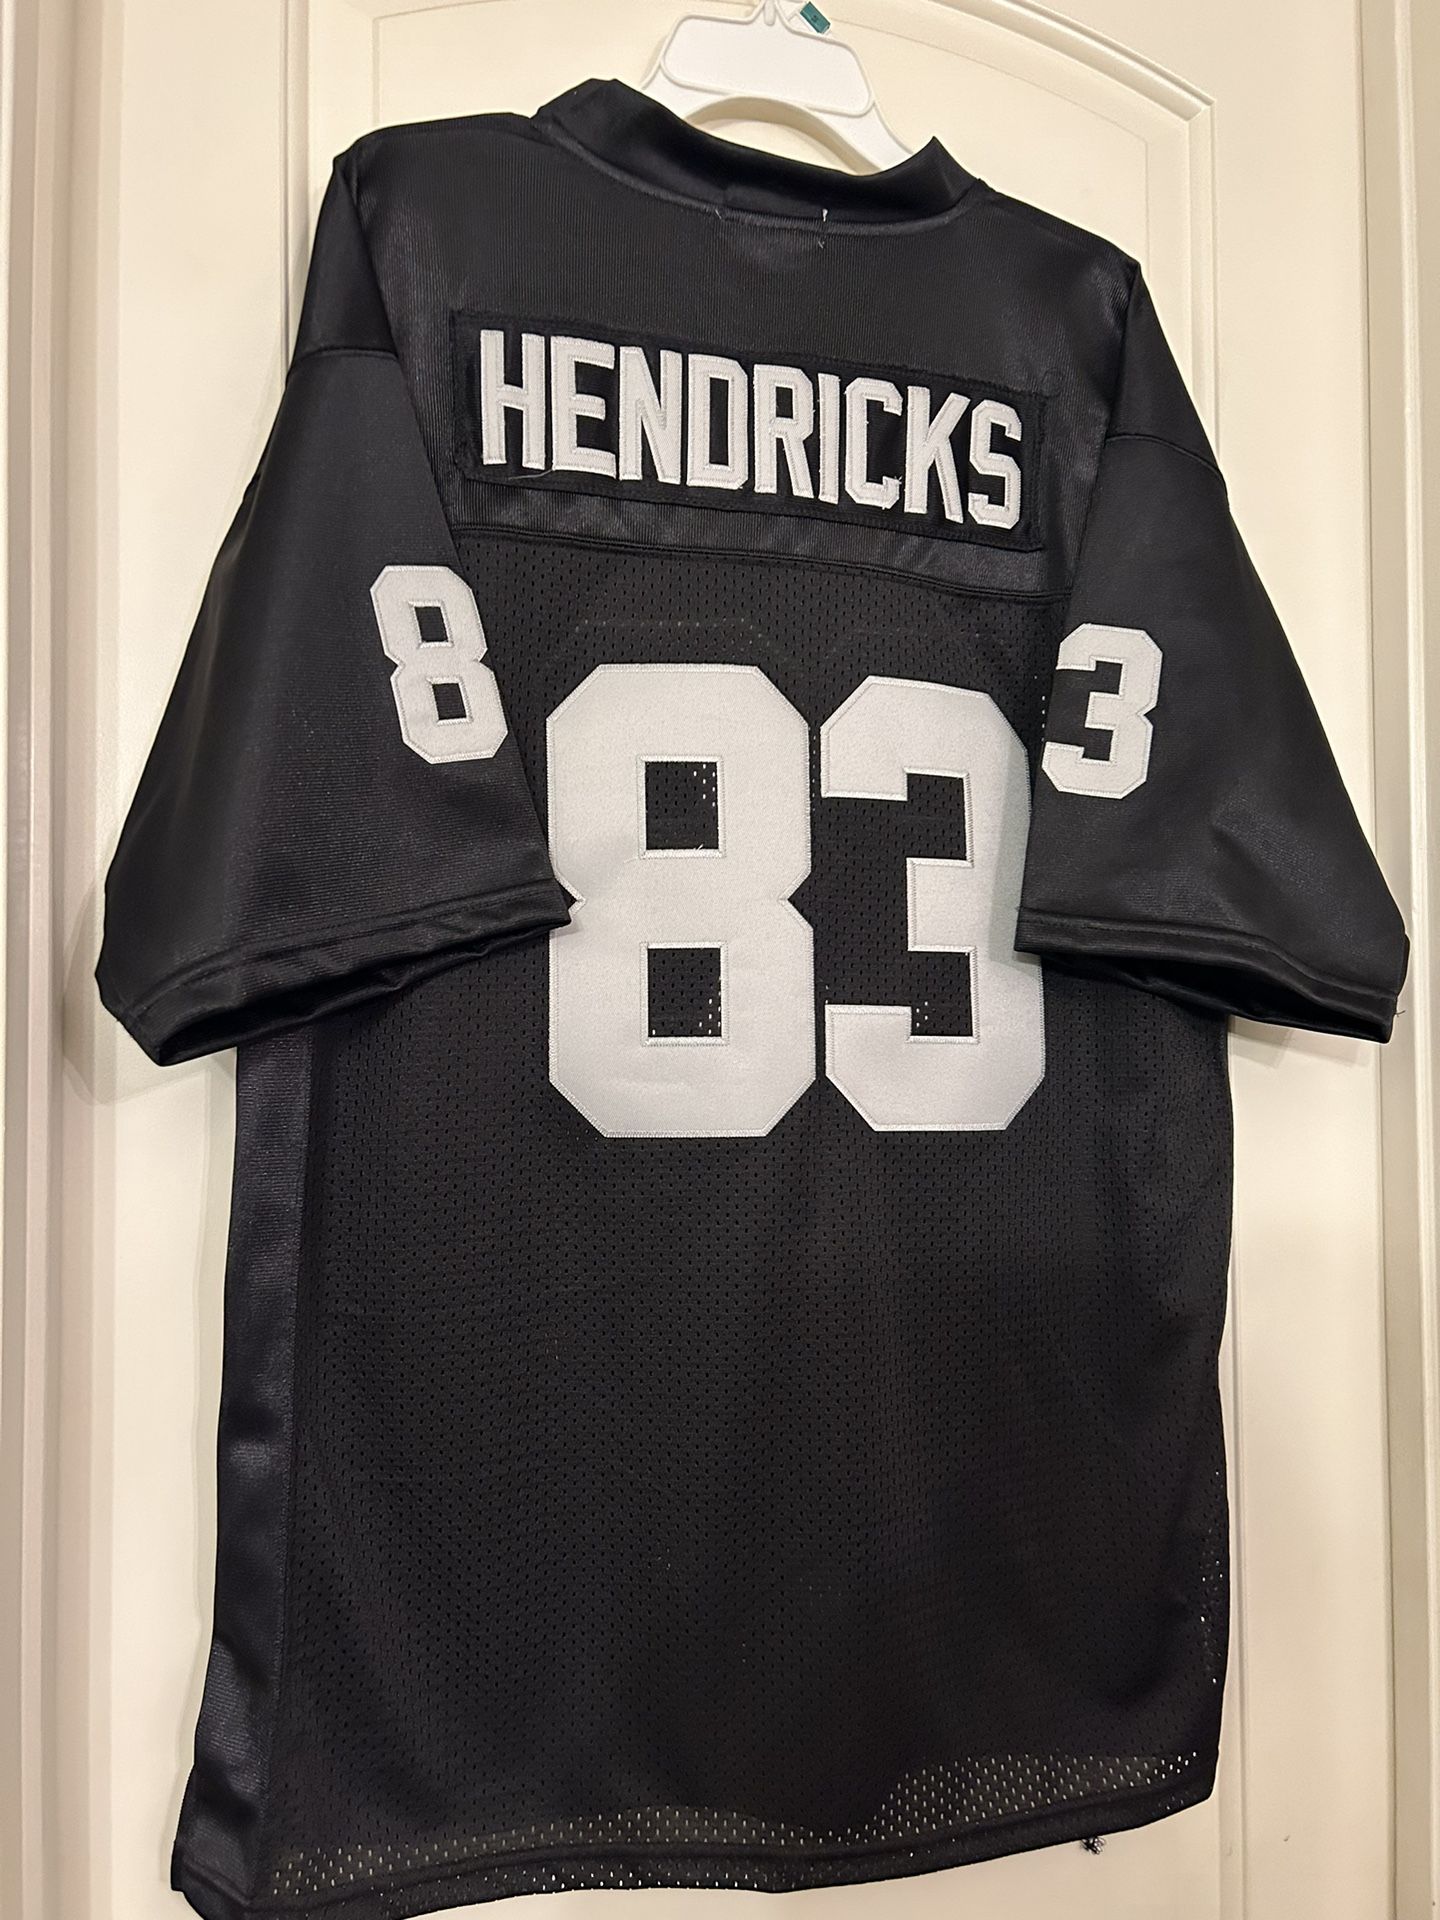 Mitchell And Ness Oakland Raiders Hendricks Jersey Size 52